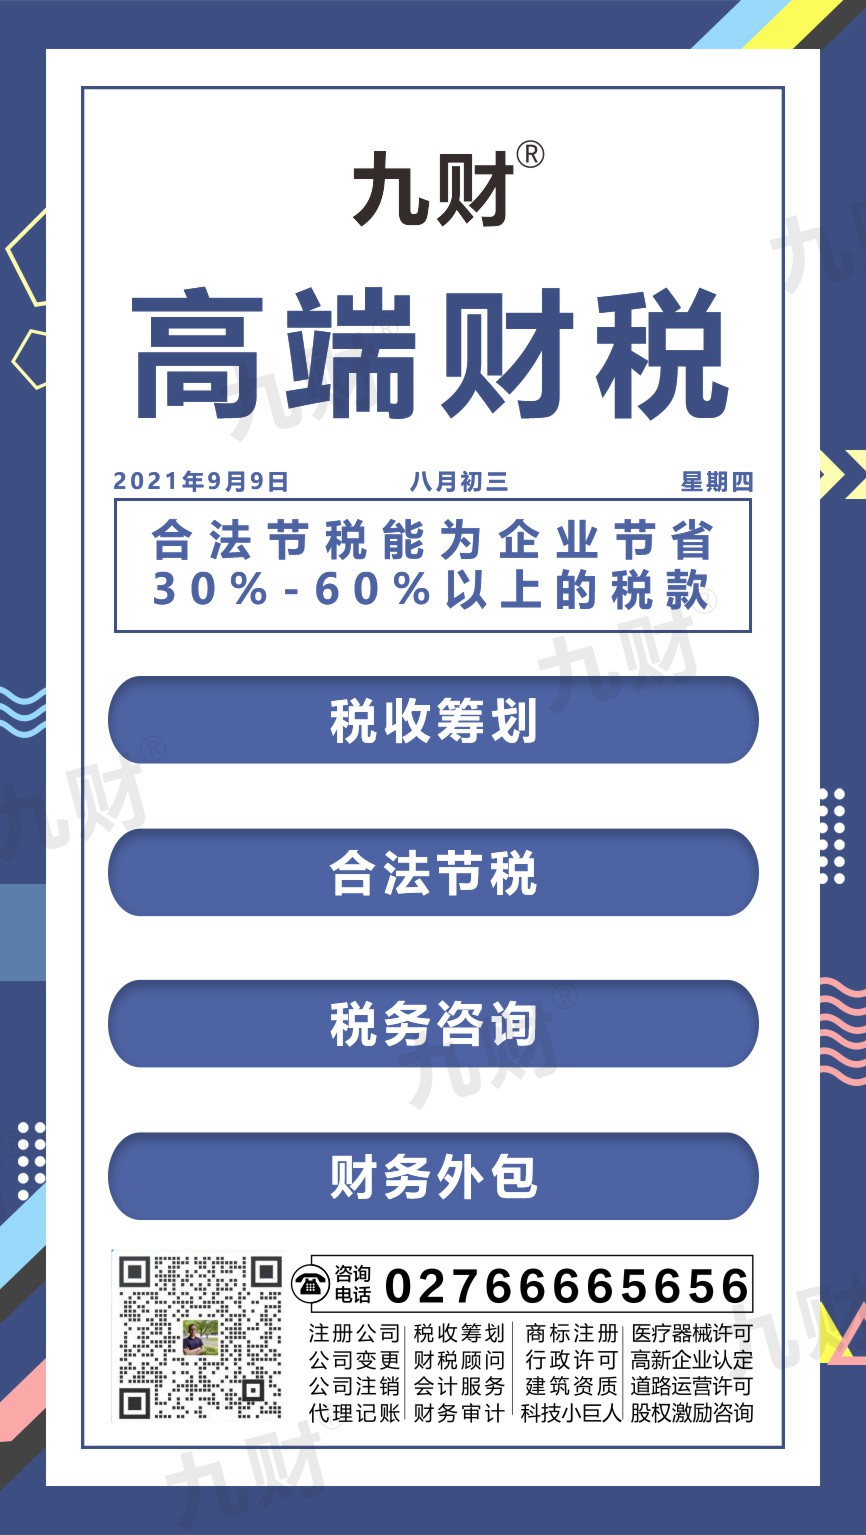 江汉区武昌股东变更网上如何填写申请表模板